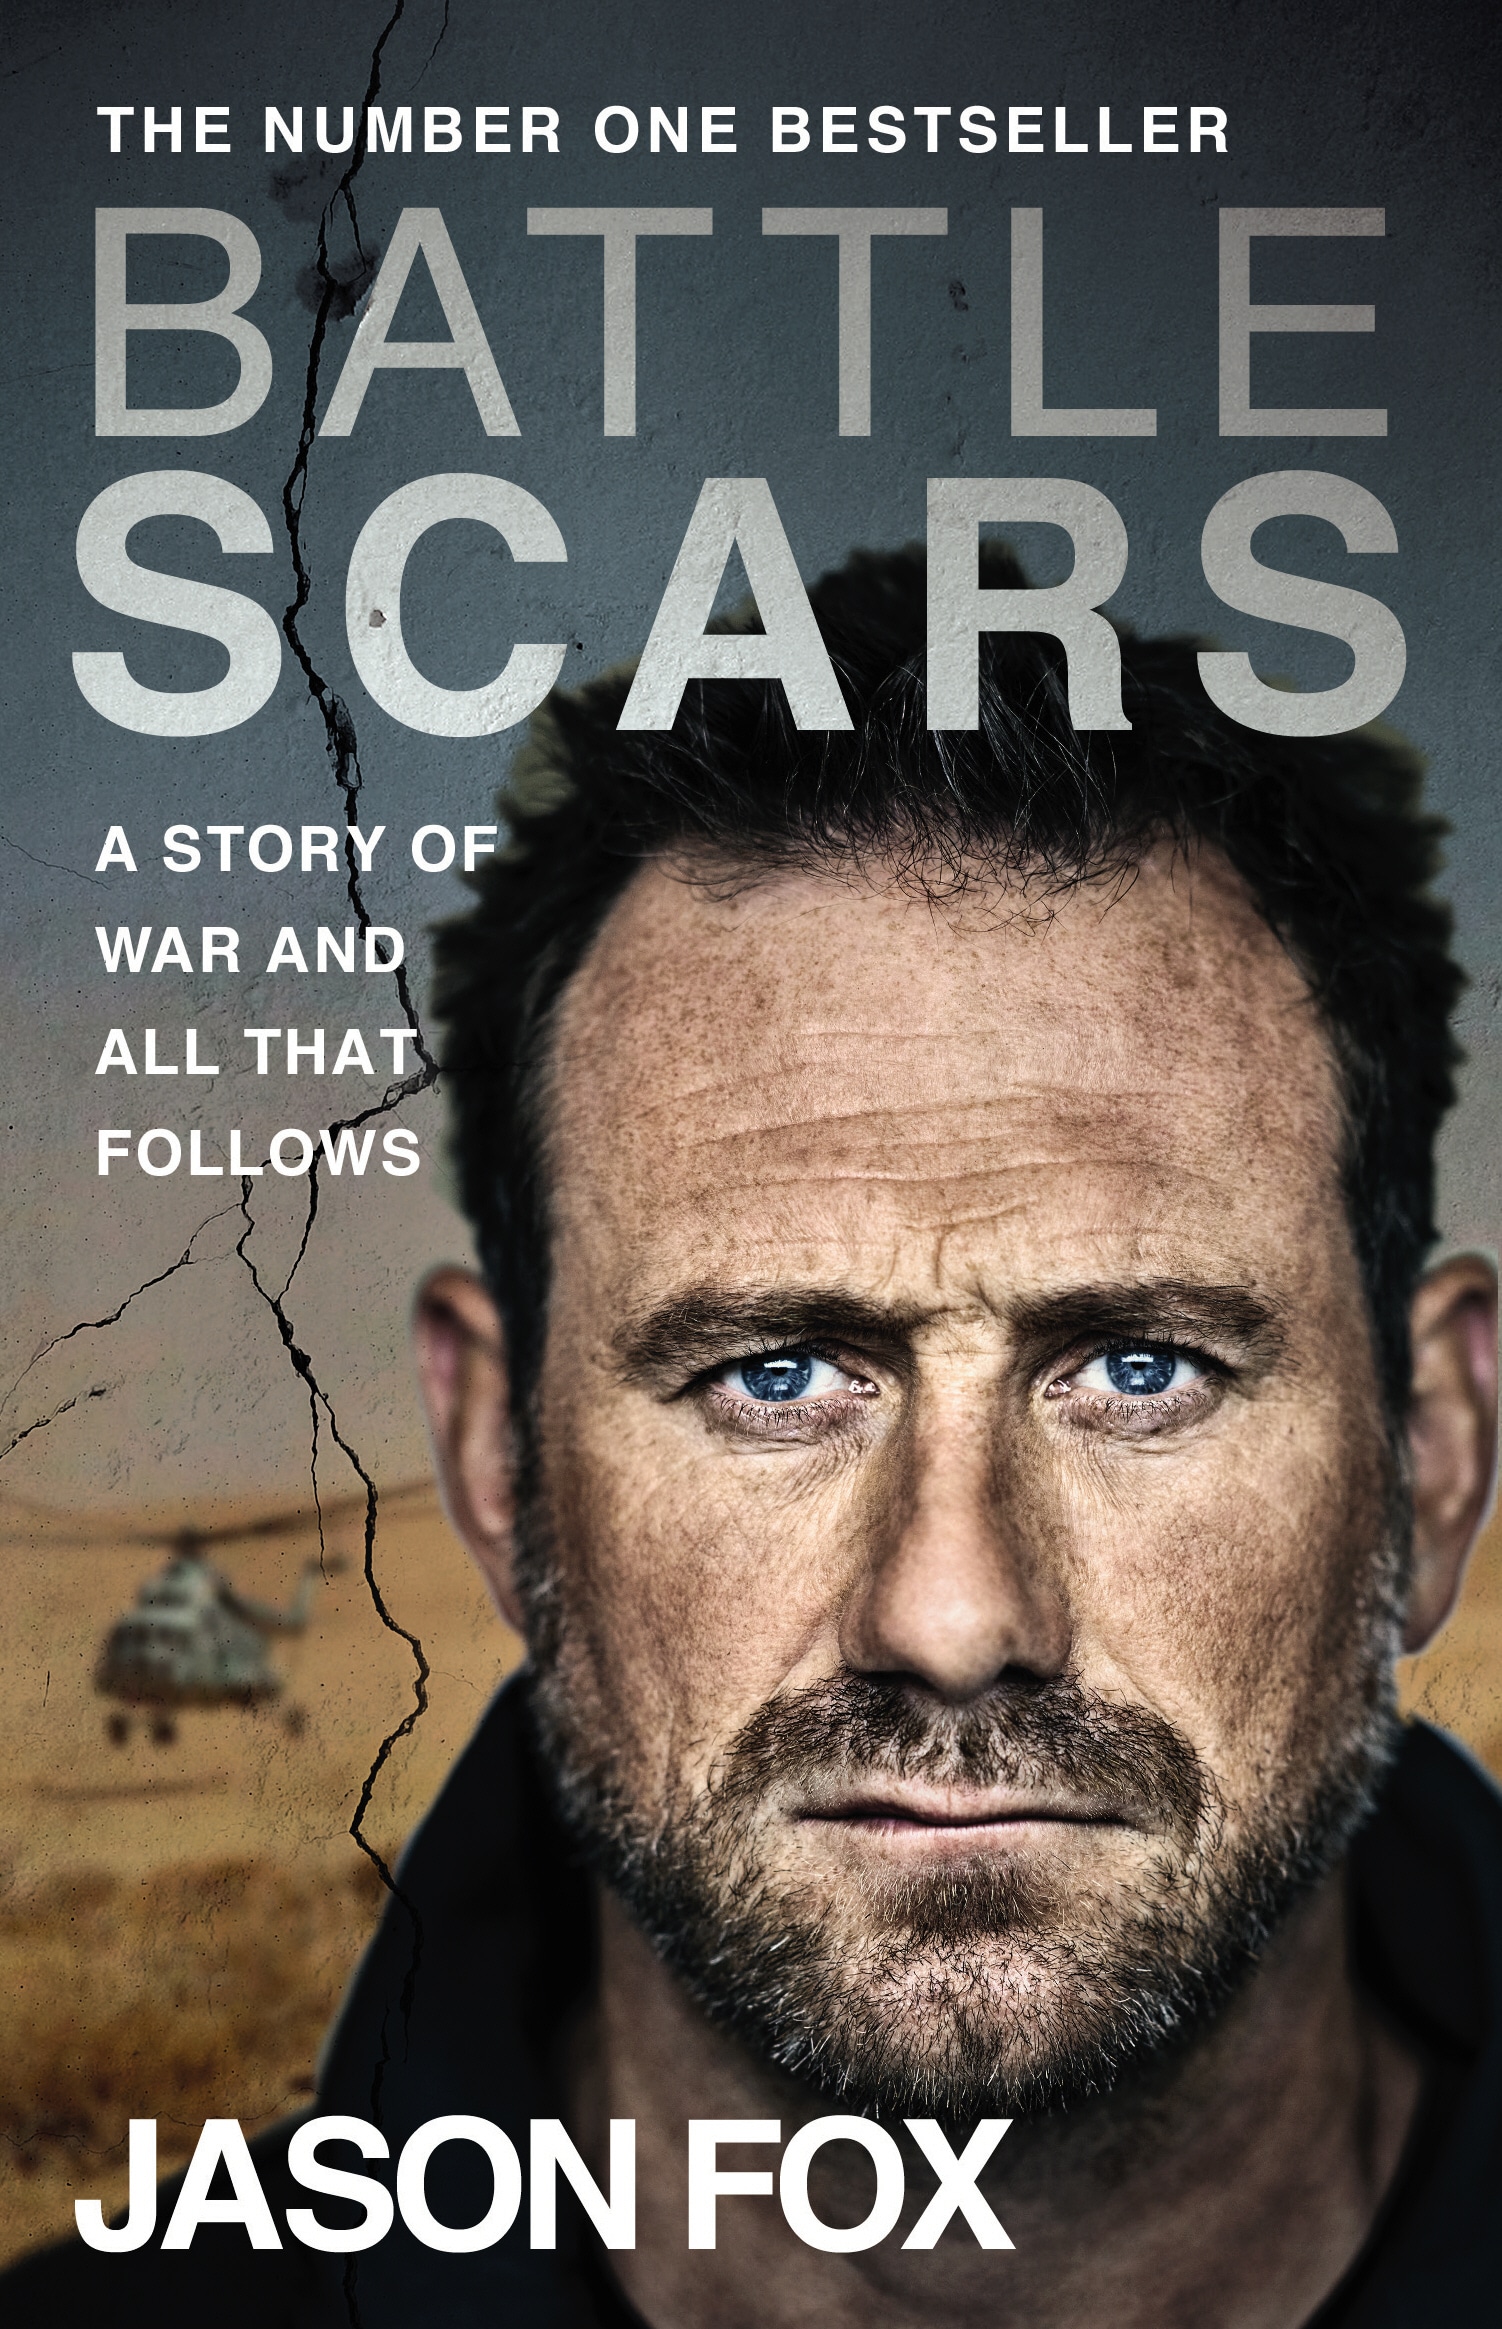 Book “Battle Scars” by Jason Fox — July 11, 2019